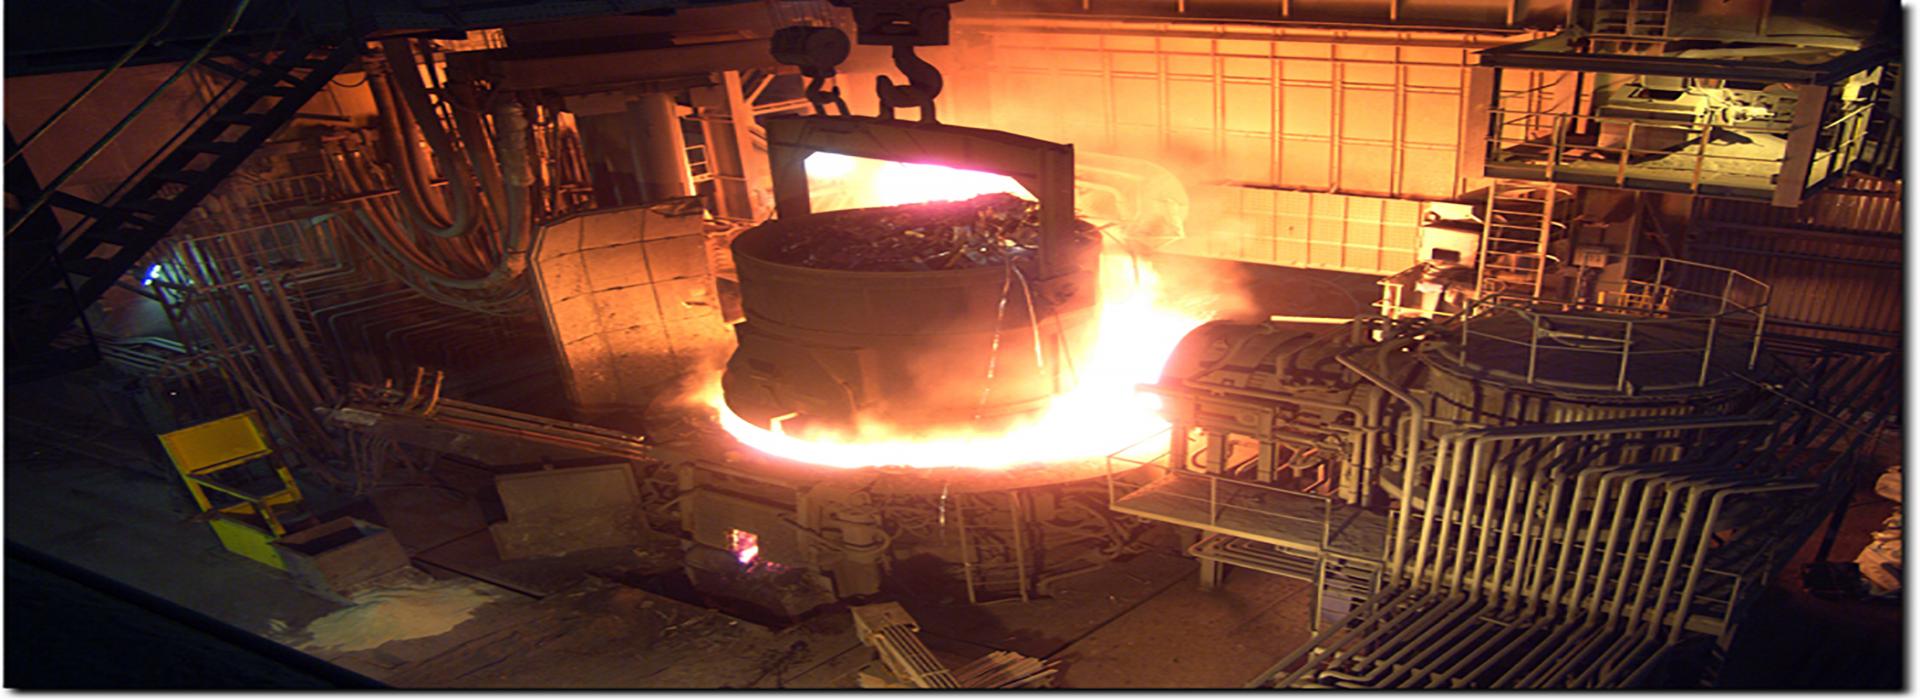 Demir Çelik Üretim Makineleri 